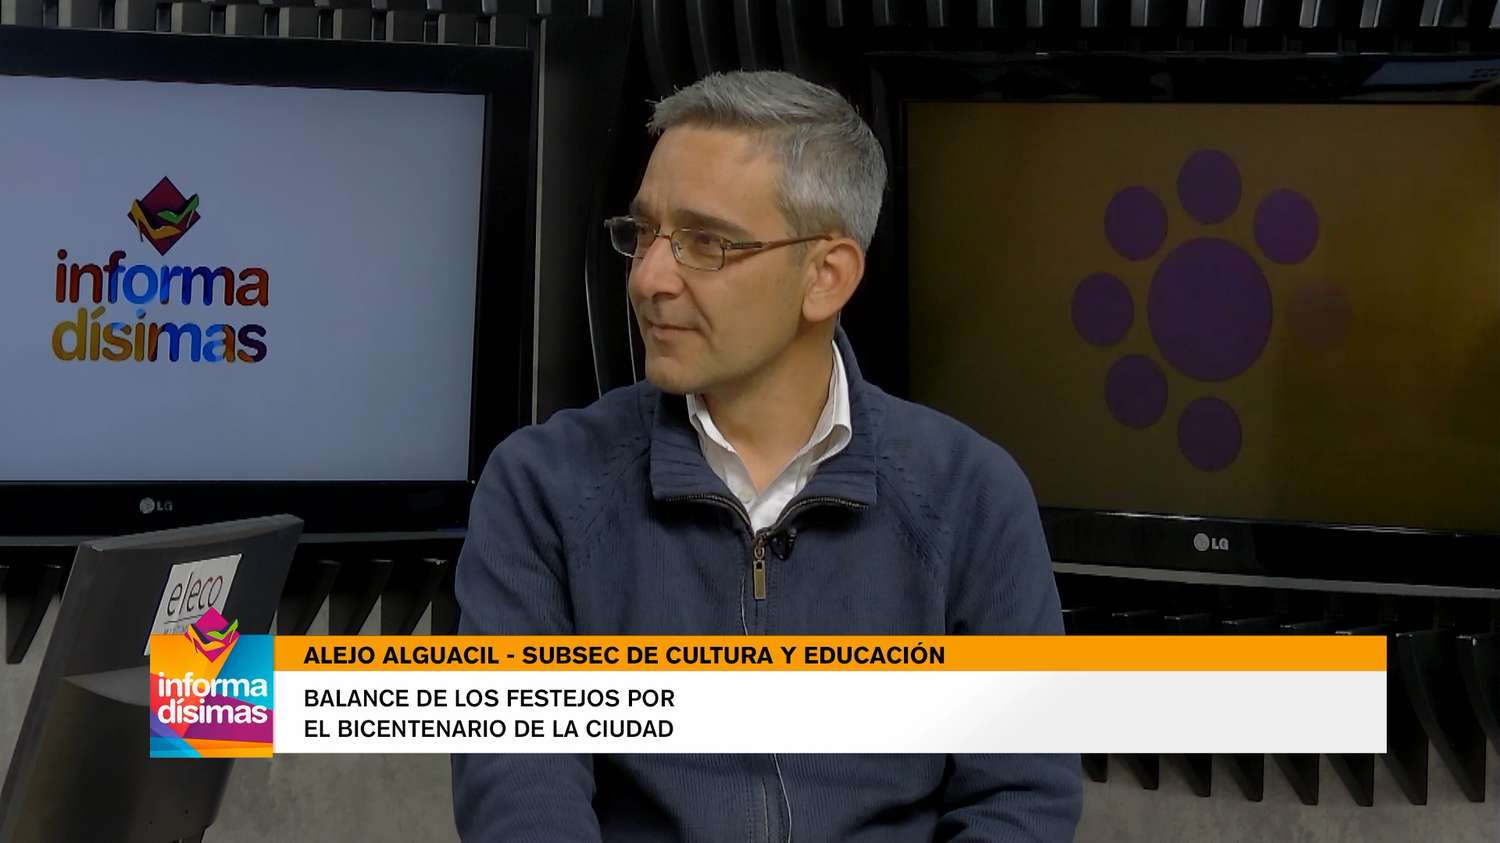 Alejo Alguacil, Subsecretario de cultura y educación en Informadísimas